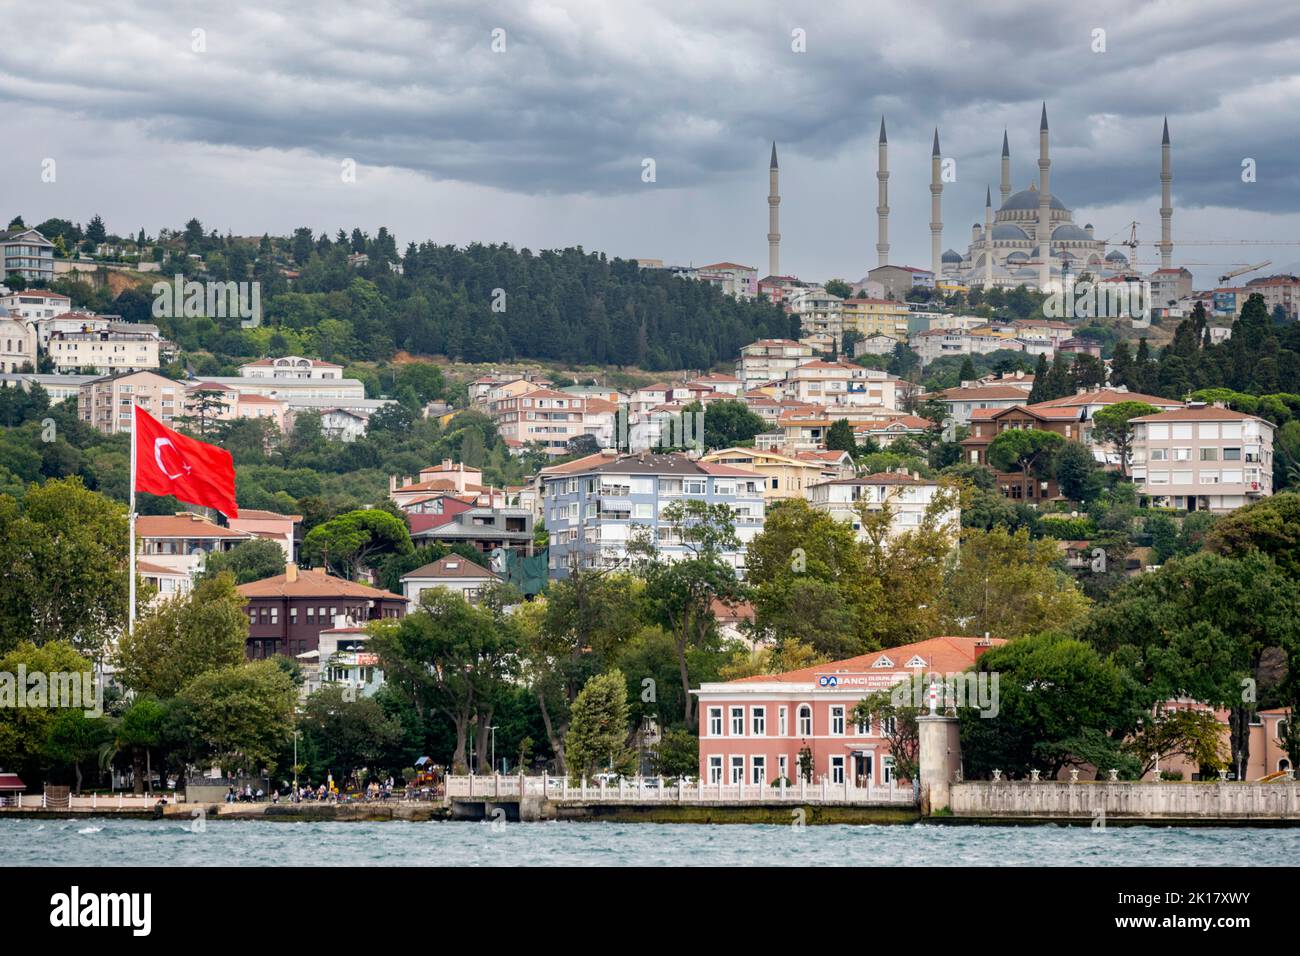 Türkei, Istanbul, Cengelköy, Blick vom Bosporus zur Çamlıca-Moschee Foto Stock